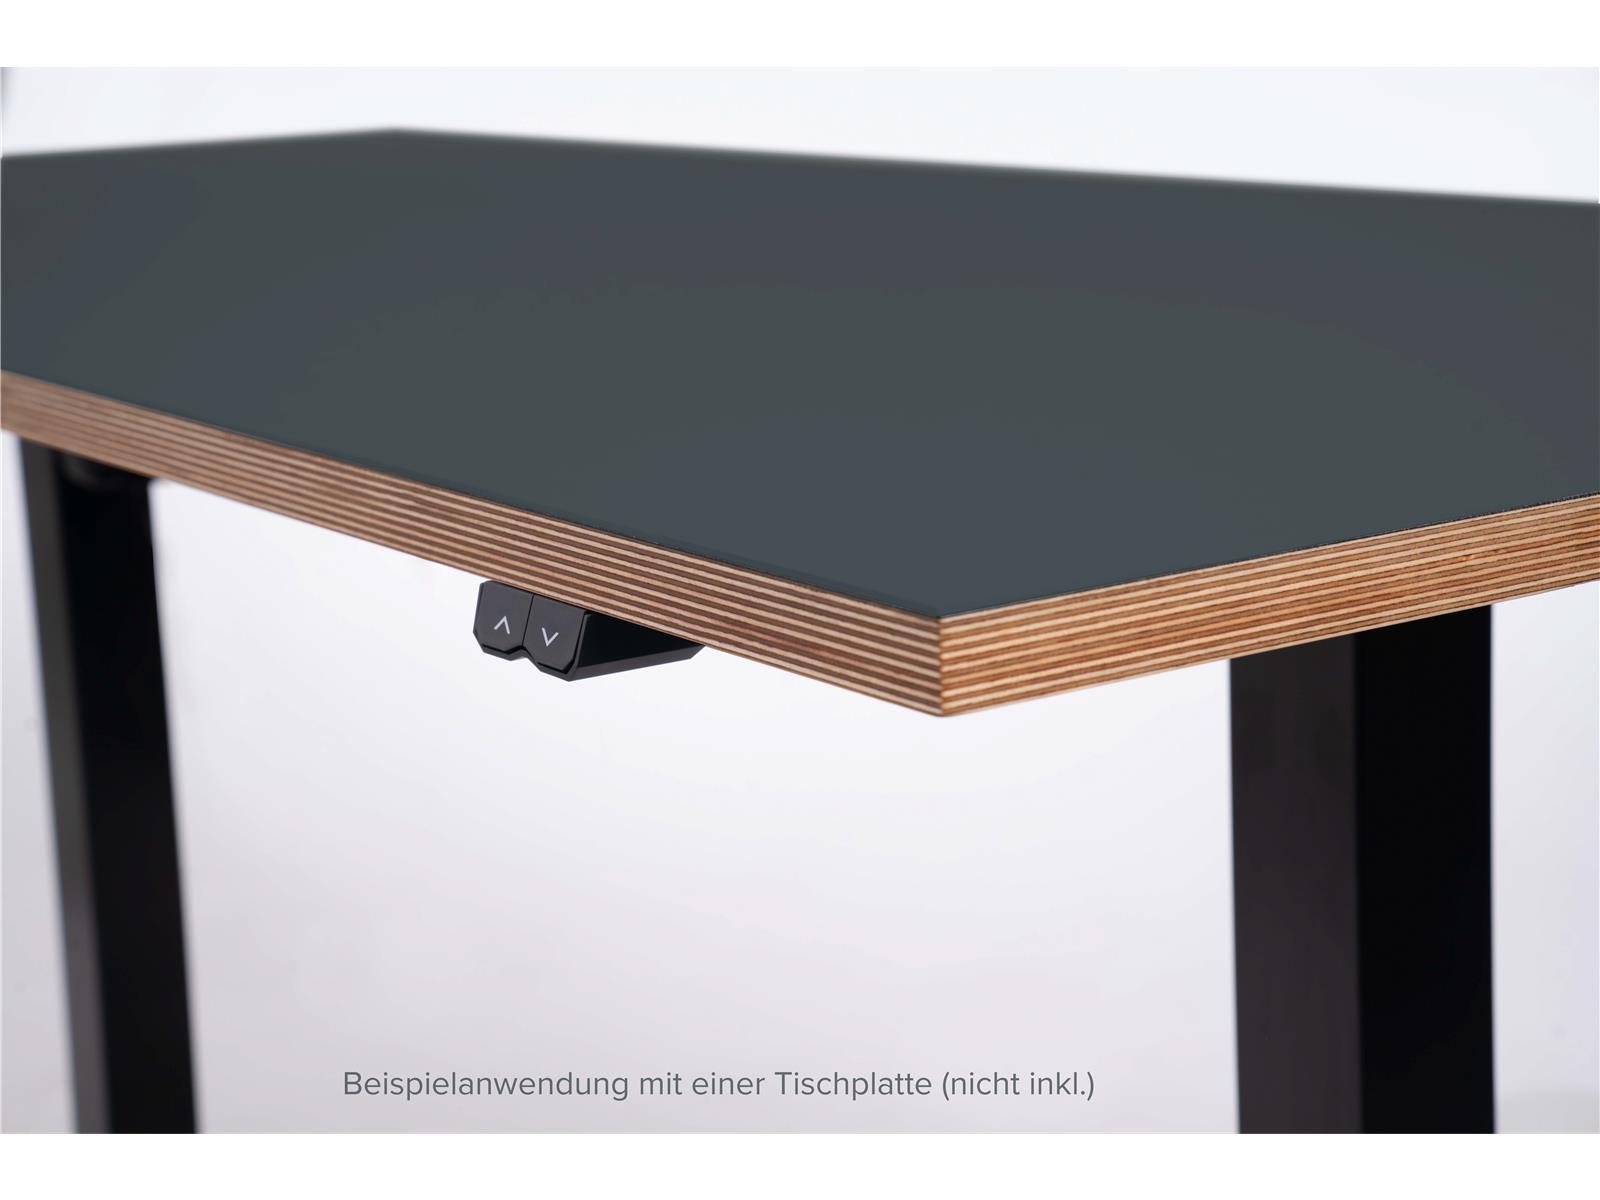 Tischgestell imstande ''smart-b'' max. 70kg, Breite 84-130cm, Höhe 73-123cm